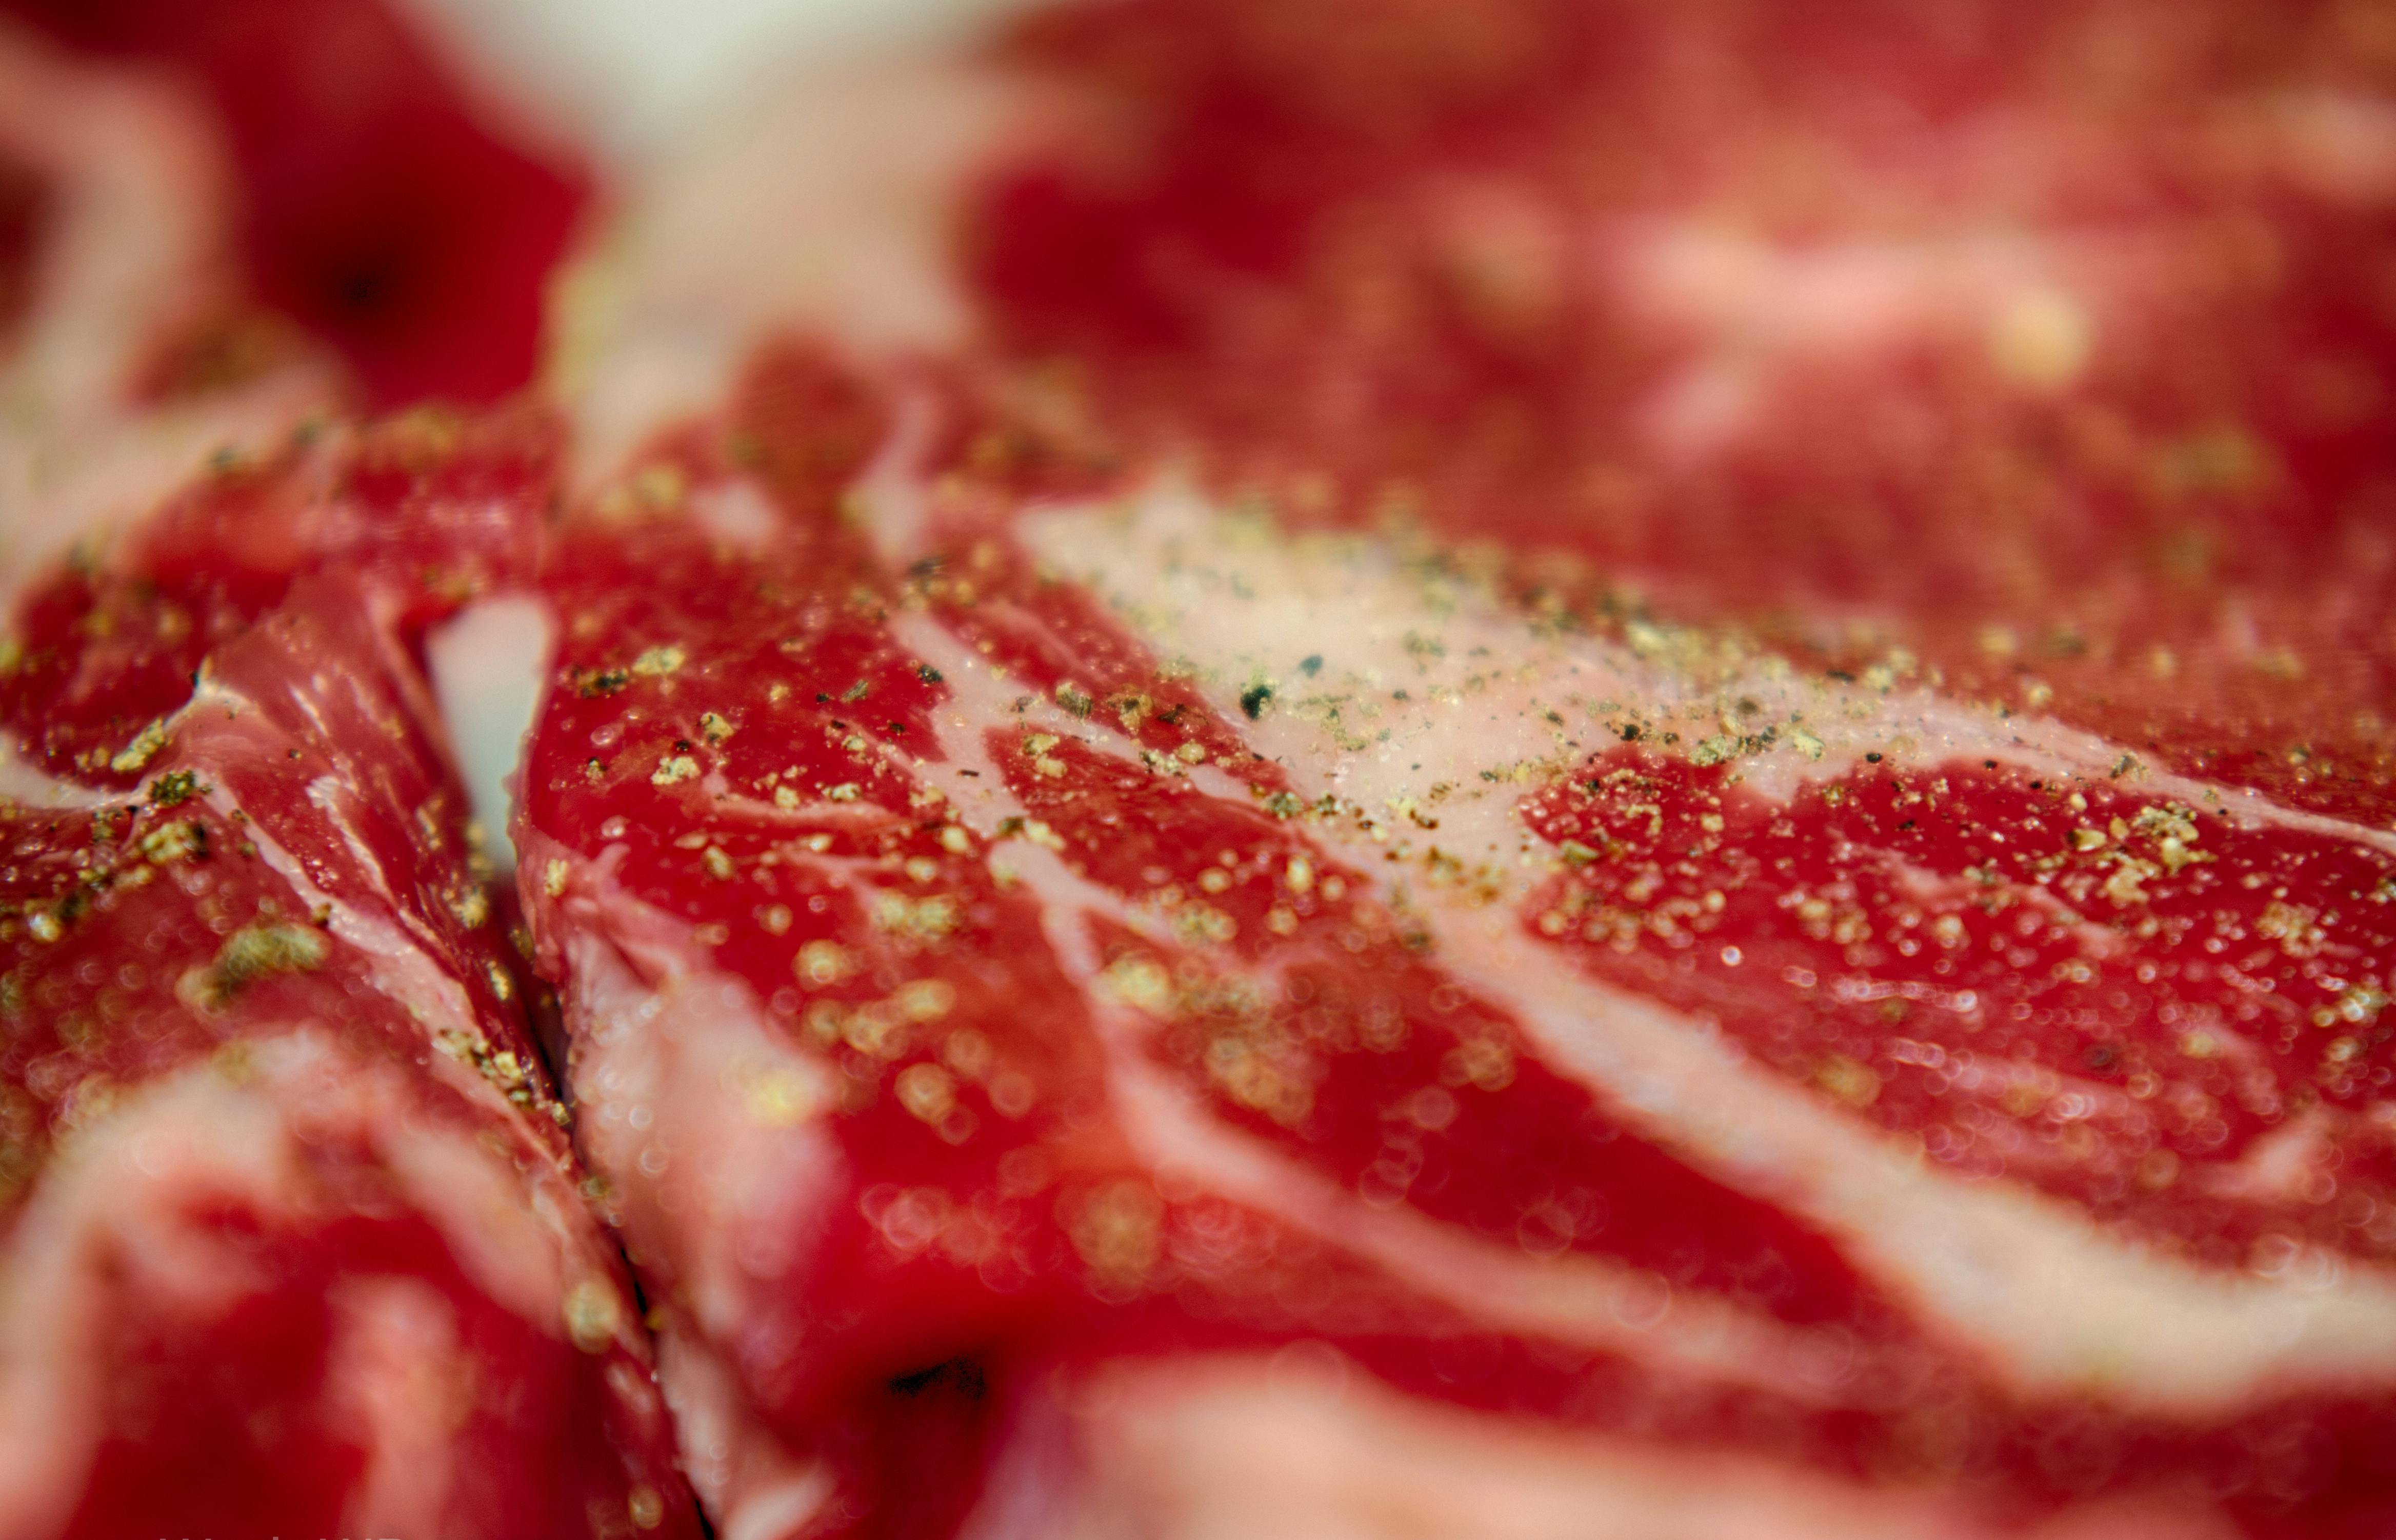 Ifølge undersøgelsen fra Aarhus Universitet er der kommet mindre kød og mere grønt på danskernes middagstallerken. Foto: CCBY: Wade Brooks.